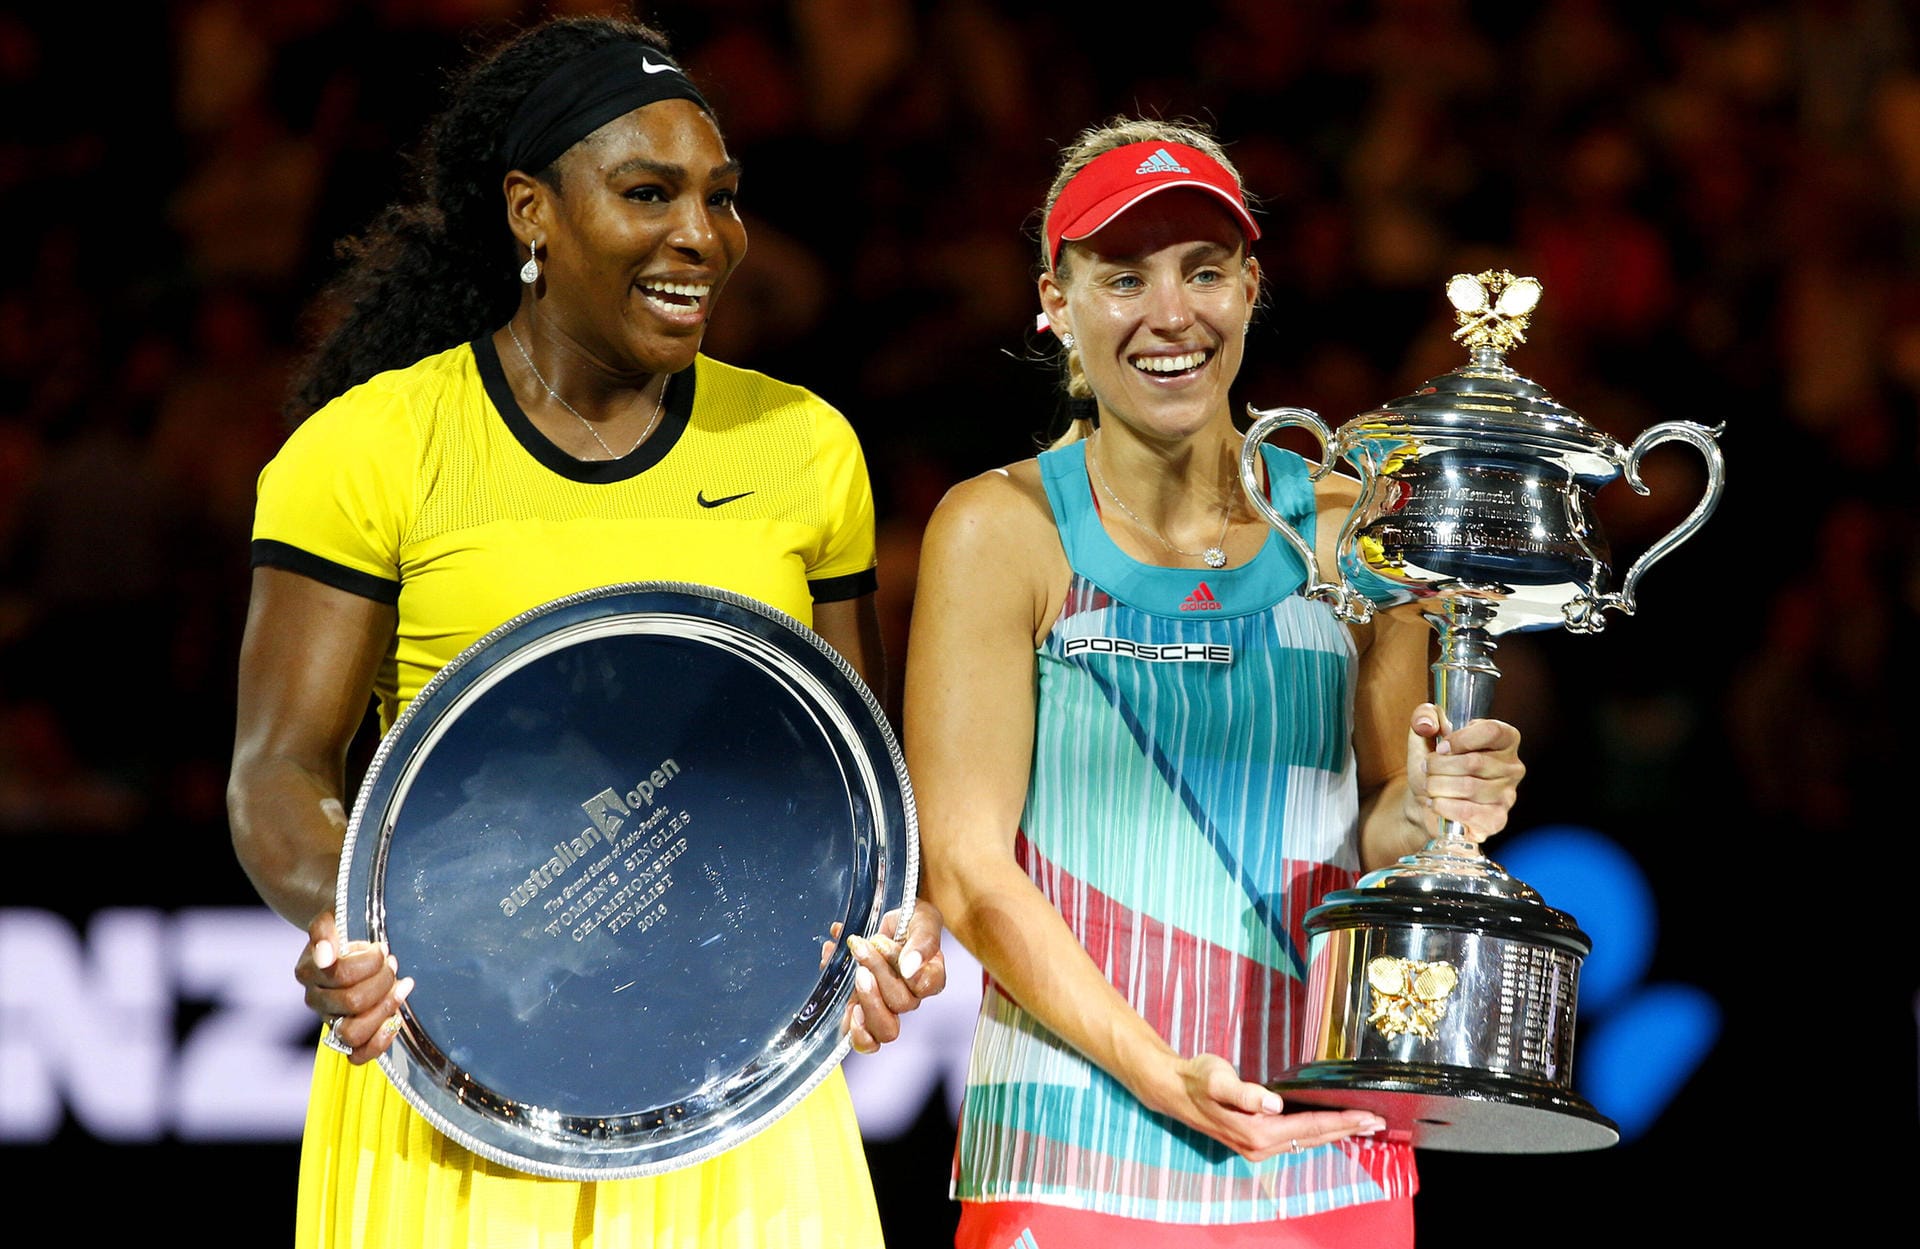 Mit ihrem Triumph über Serena Williams (l.) bei den Australian Open 2016 rückte Angelique Kerber in die Riege der deutschen Grand-Slam-Sieger auf. Die ehemalige Nummer eins der Welt ließ im gleichen Jahr den Sieg bei den US Open folgen. 2018 krönte sich Kerber zudem zum Champion von Wimbledon.